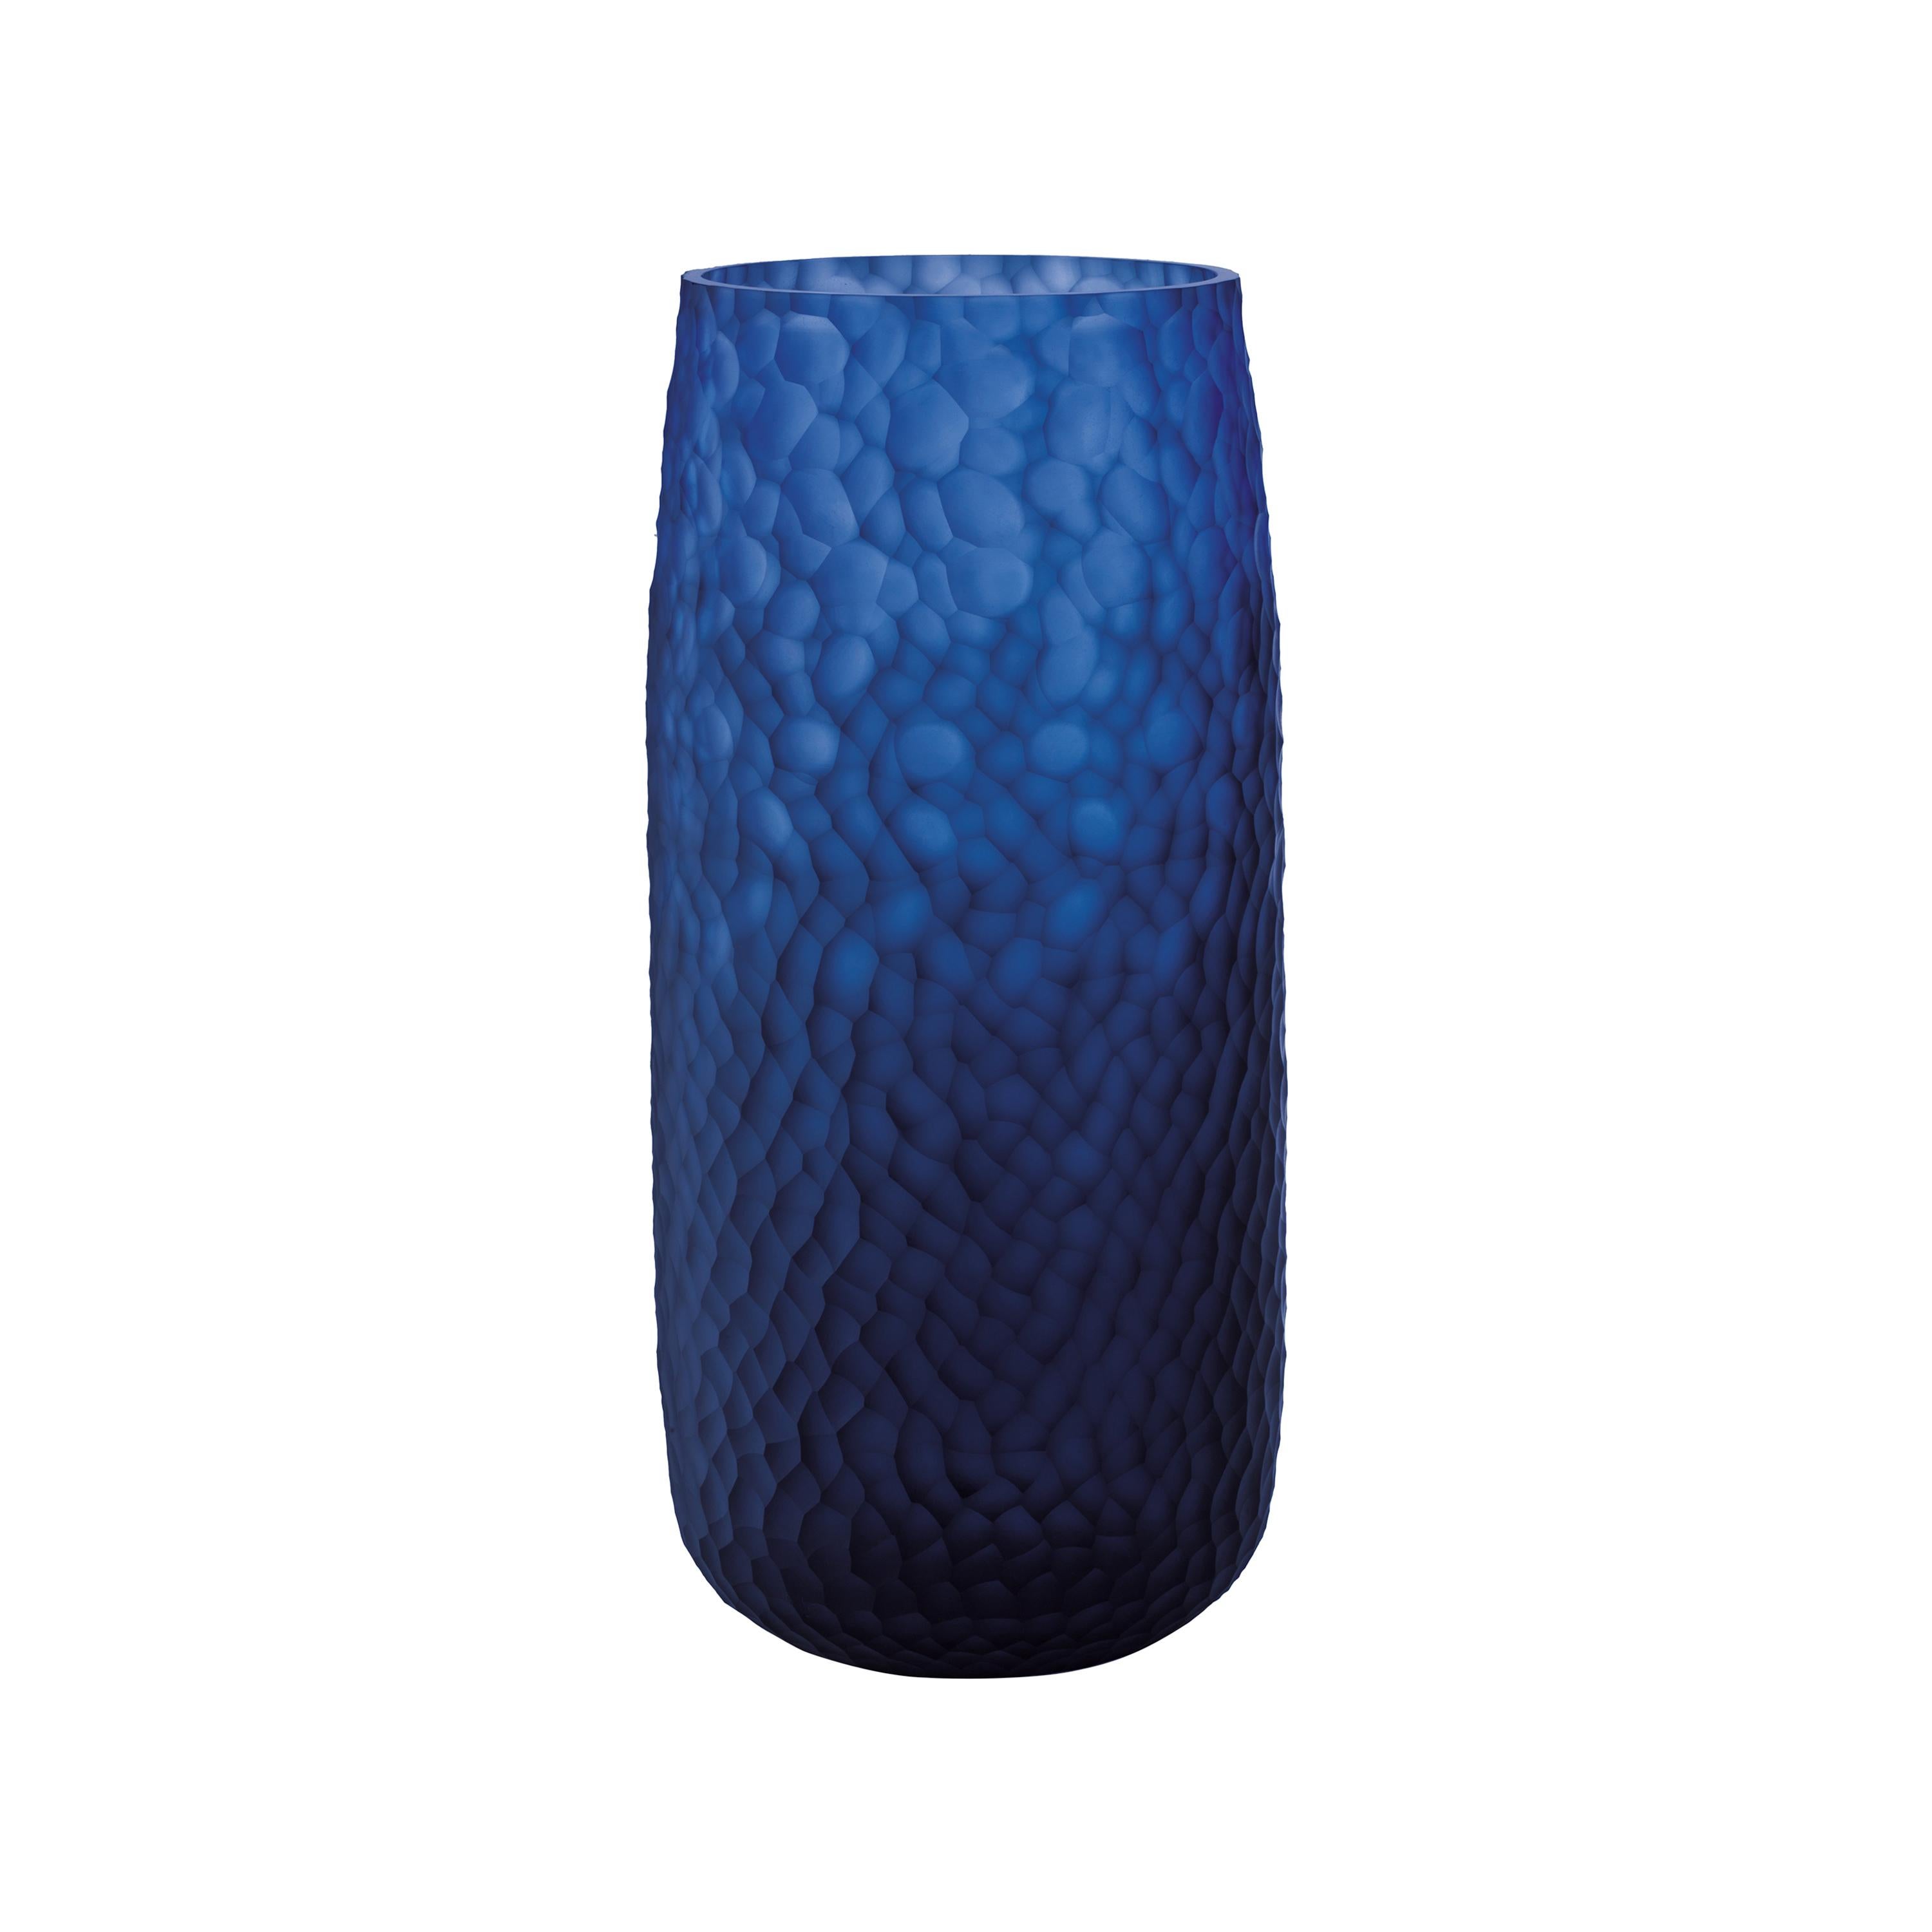 Salviati Large Battuti Vase in Blue Glass For Sale